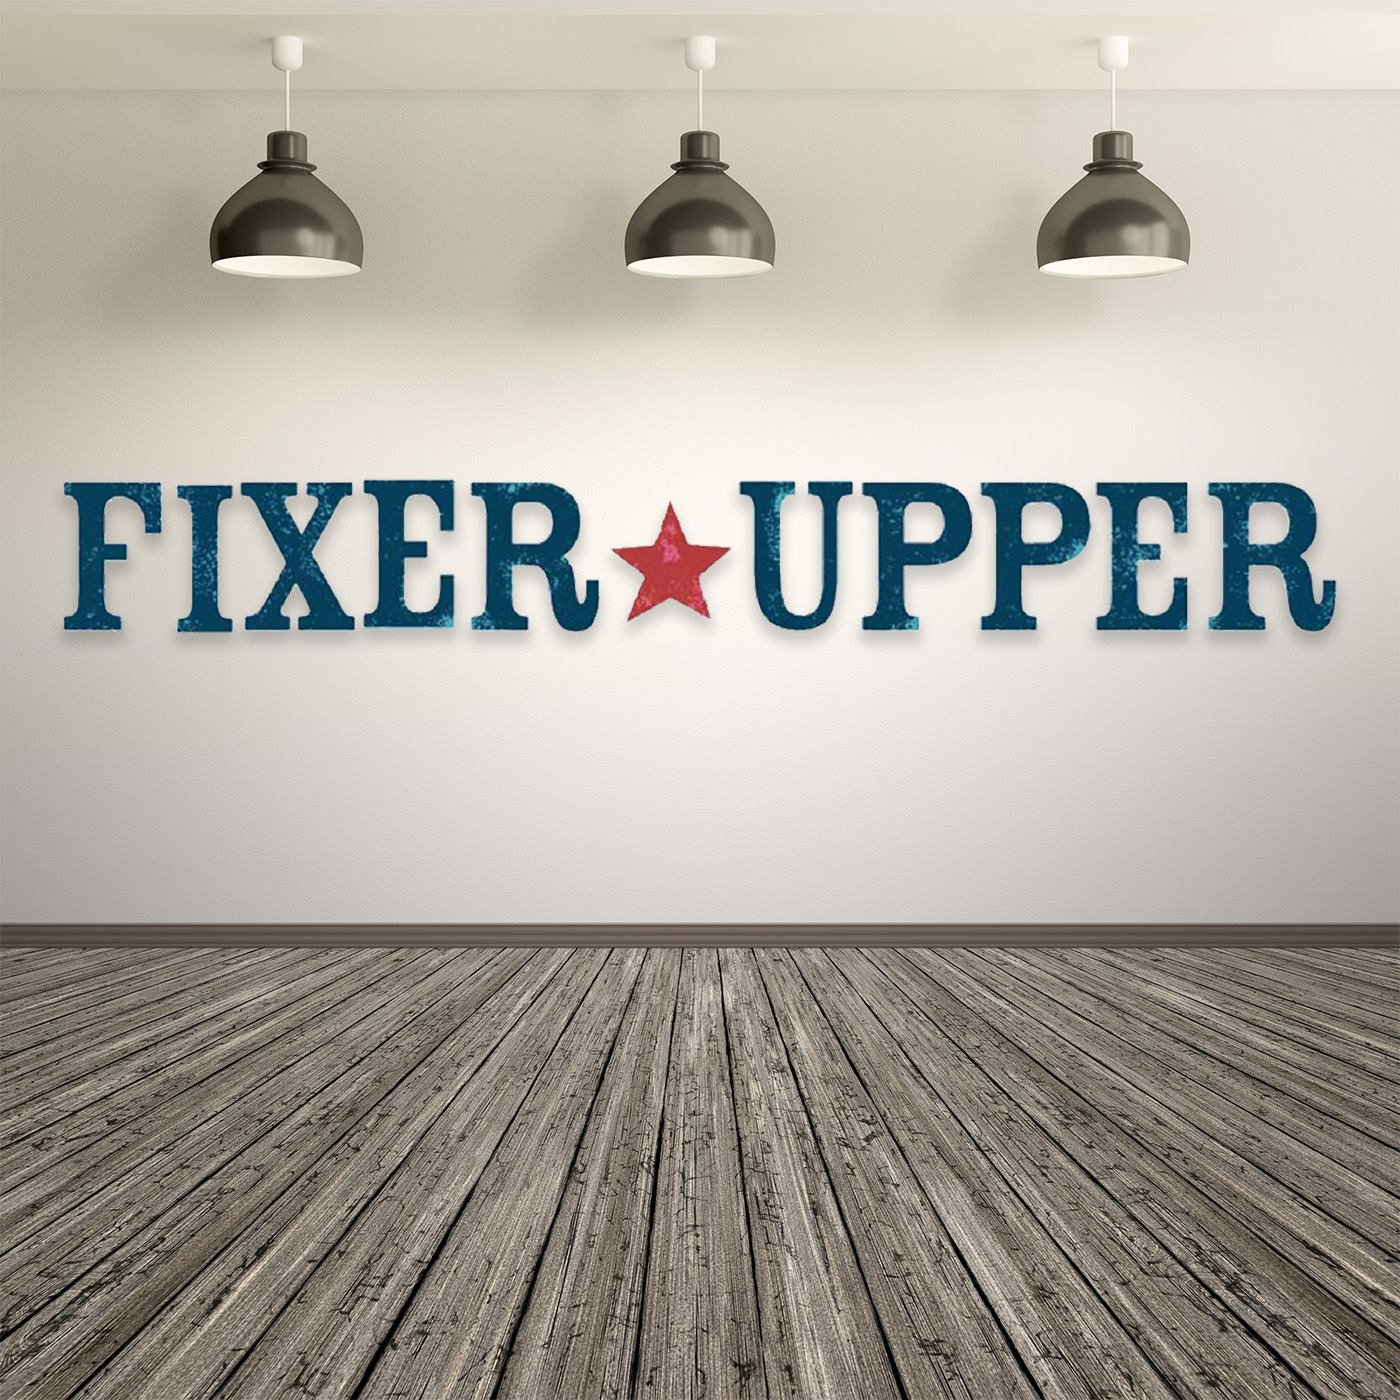 Fixer Upper - Part 3 - The Essentials For a Renovation